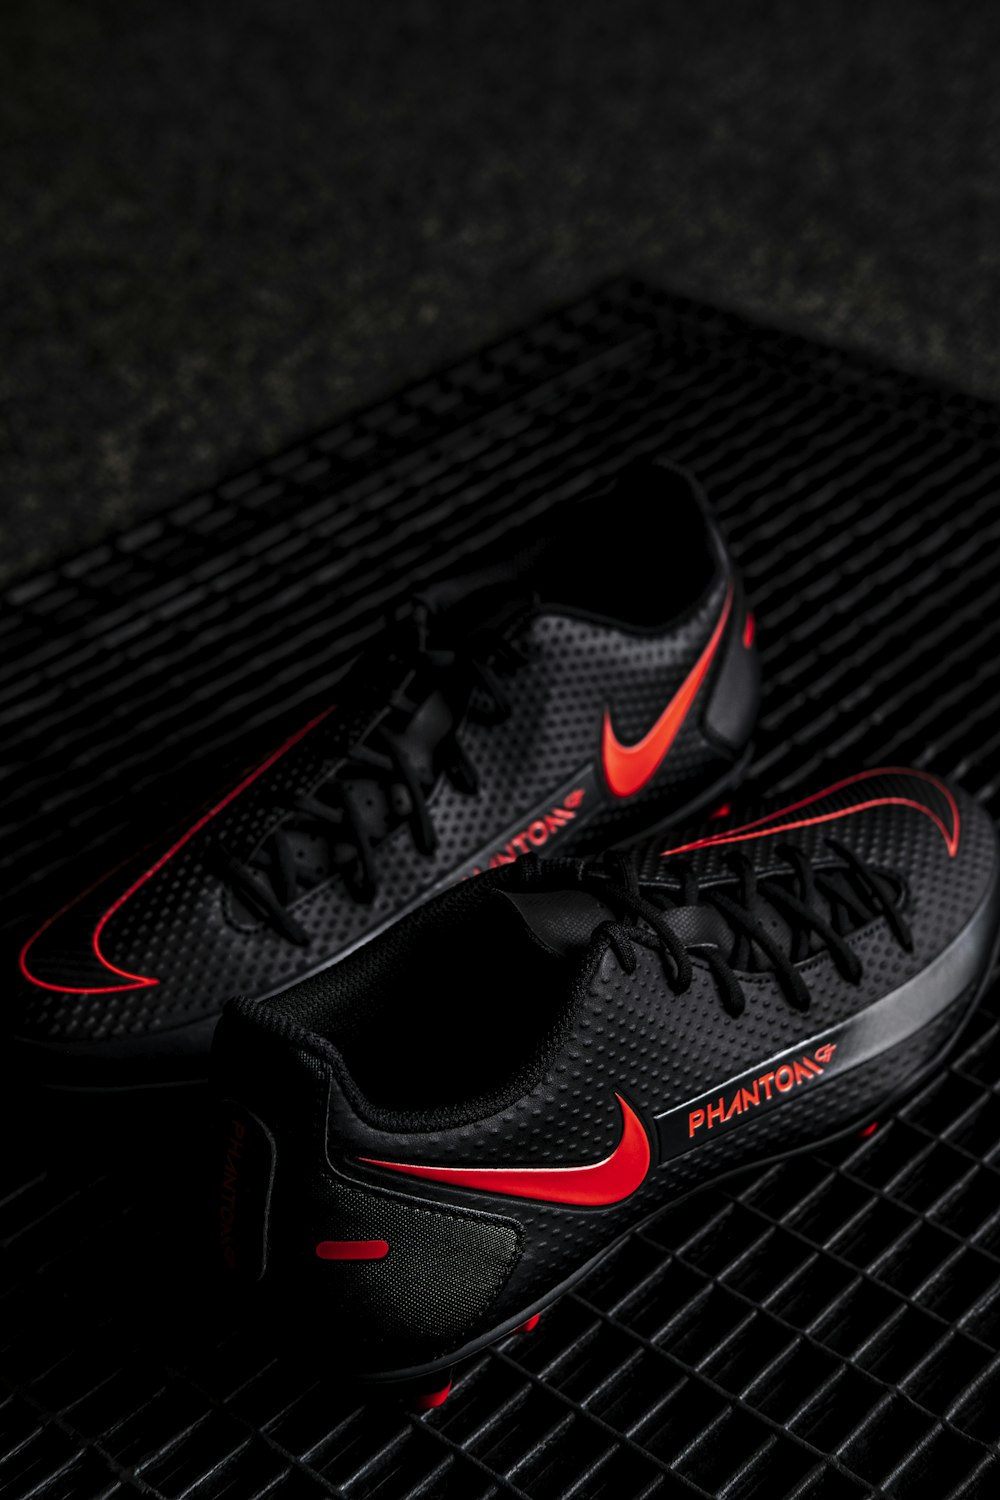 Foto Tenis nike negros y rojos – Imagen Nike Phantom gratis en Unsplash